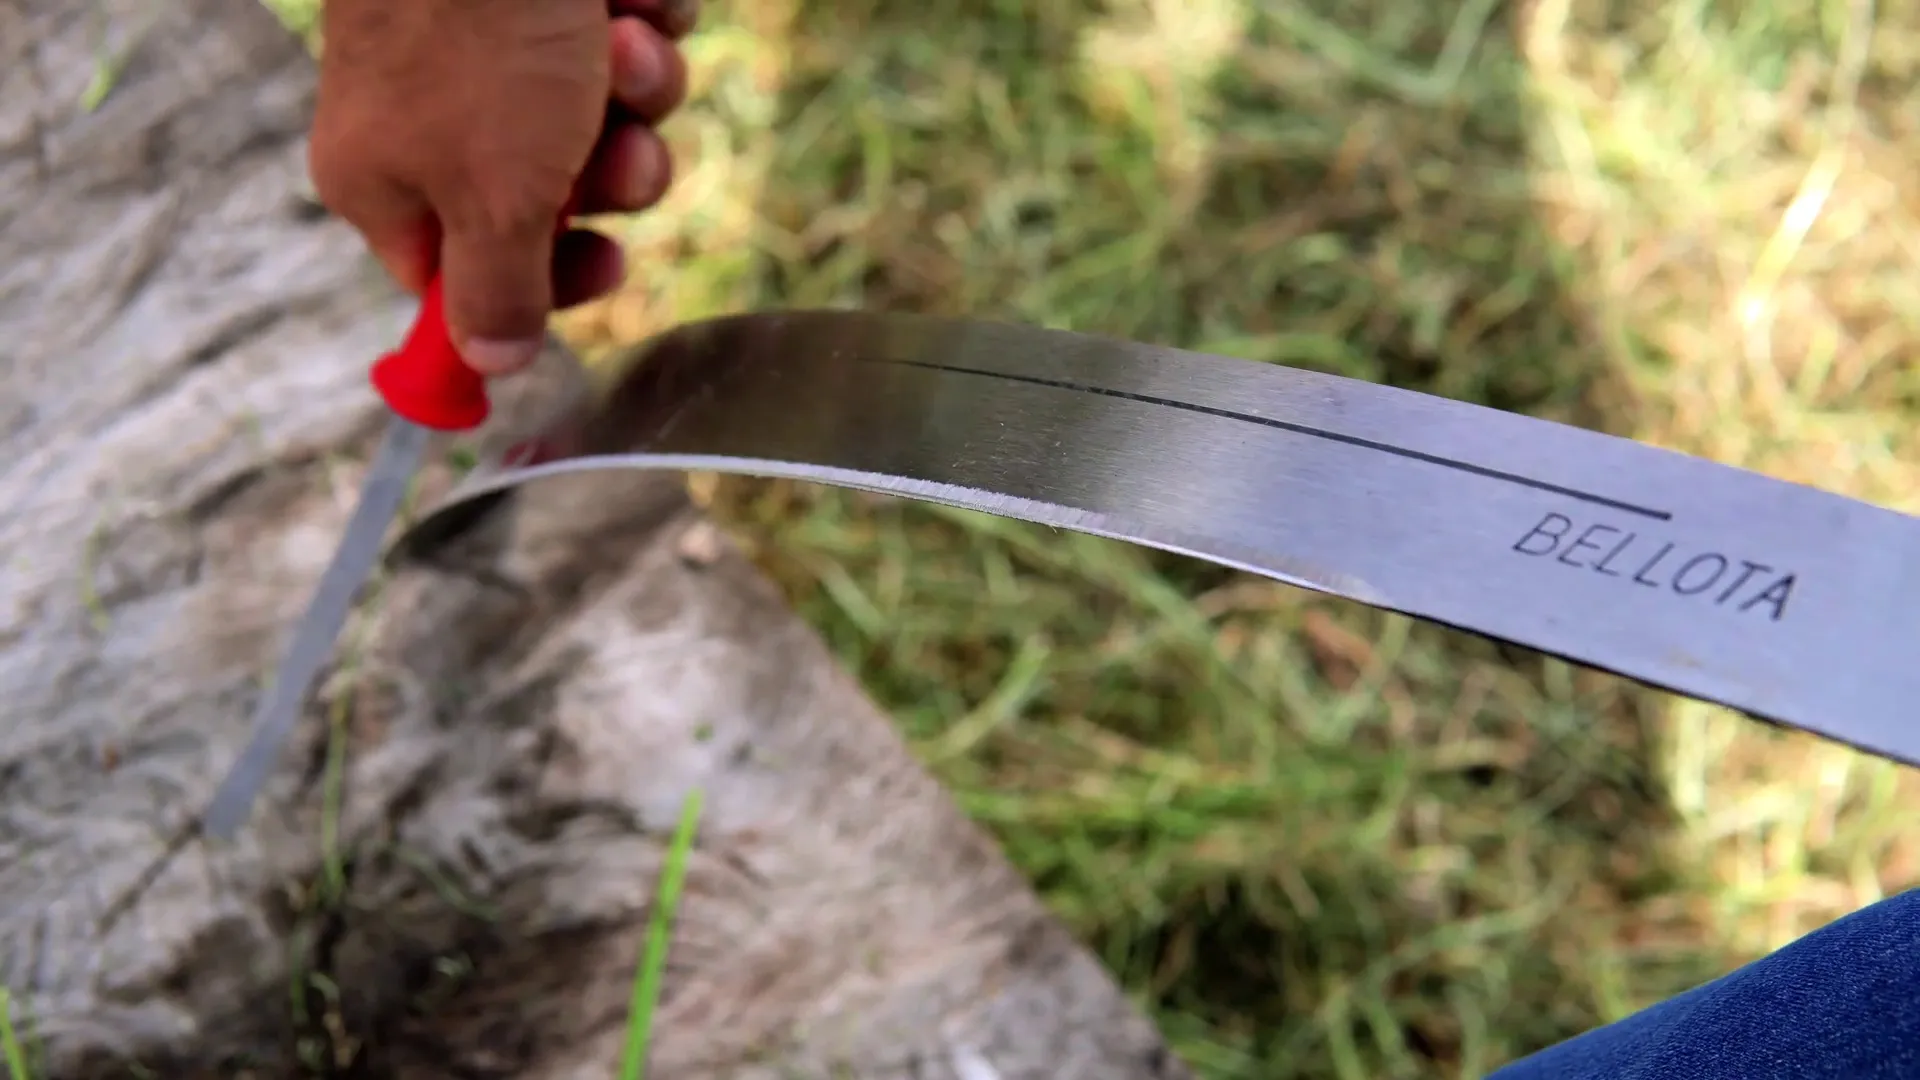 corte de maleza con machete, una técnica tradicional venezolana